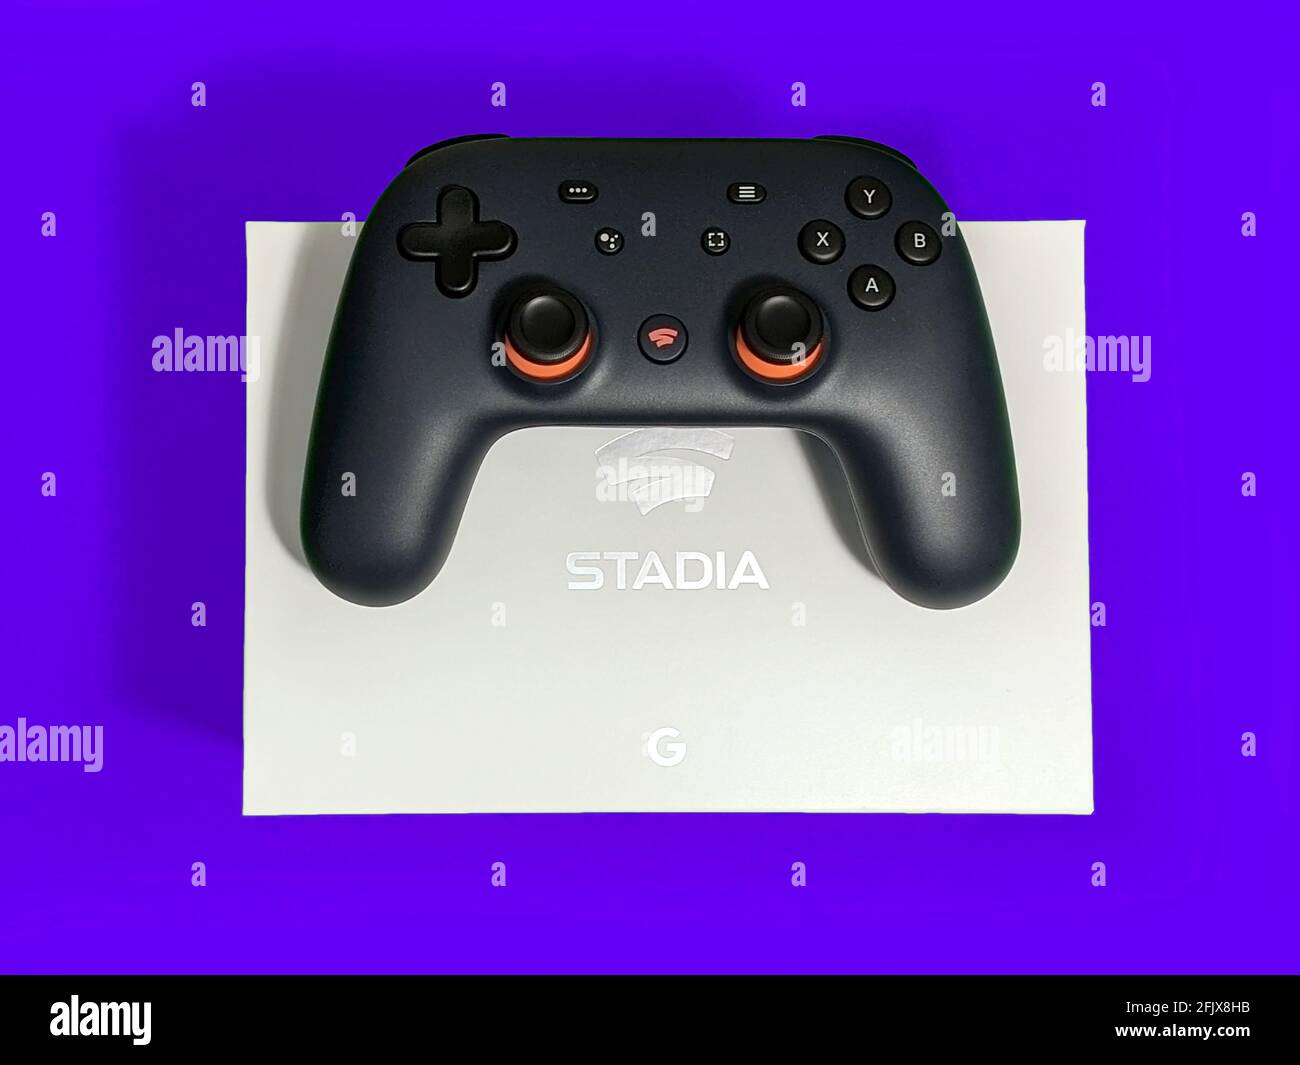 Seattle, WA / USA - ca. November 2019: Nahaufnahme eines Google Stadia Gaming Controllers, der auf einer weißen Box vor einem farbenfrohen Hintergrund ruht Stockfoto